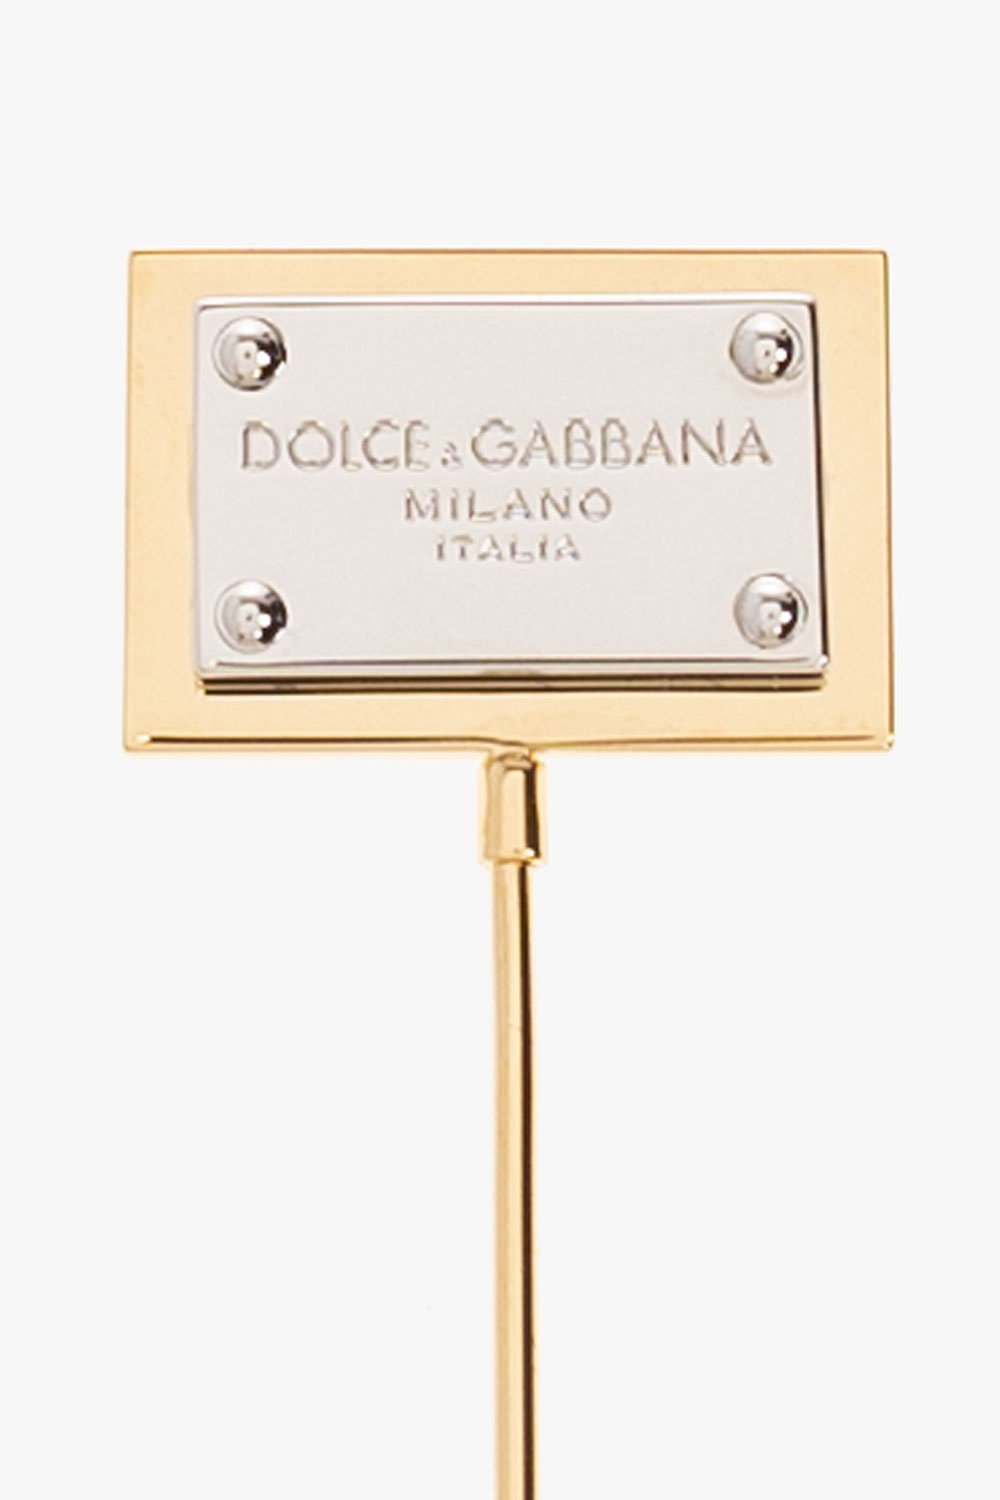 Dolce & Gabbana Pin with logo